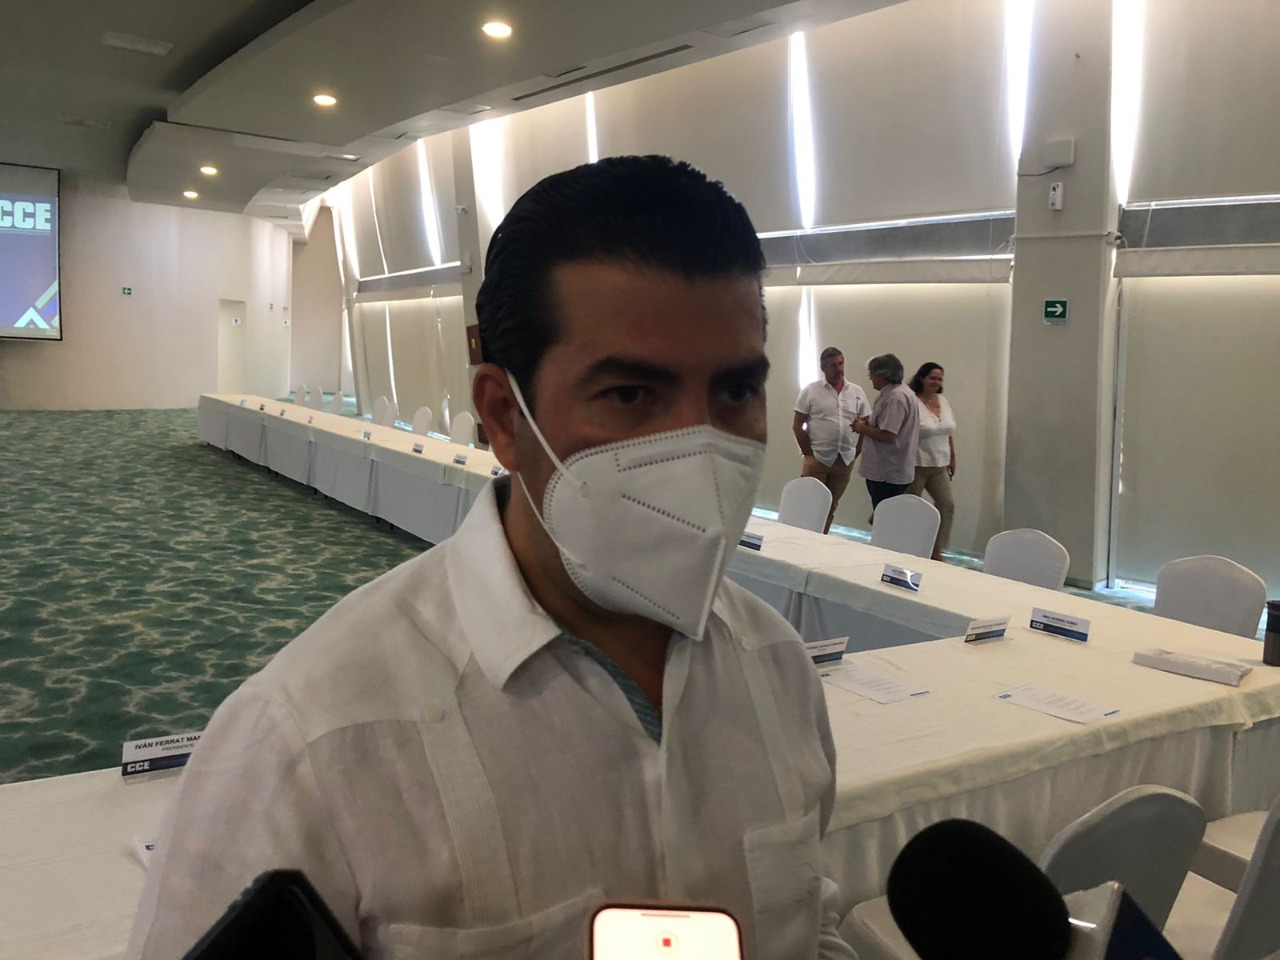 El año pasado se batió récord de despojos inmobiliarios en Quintana Roo